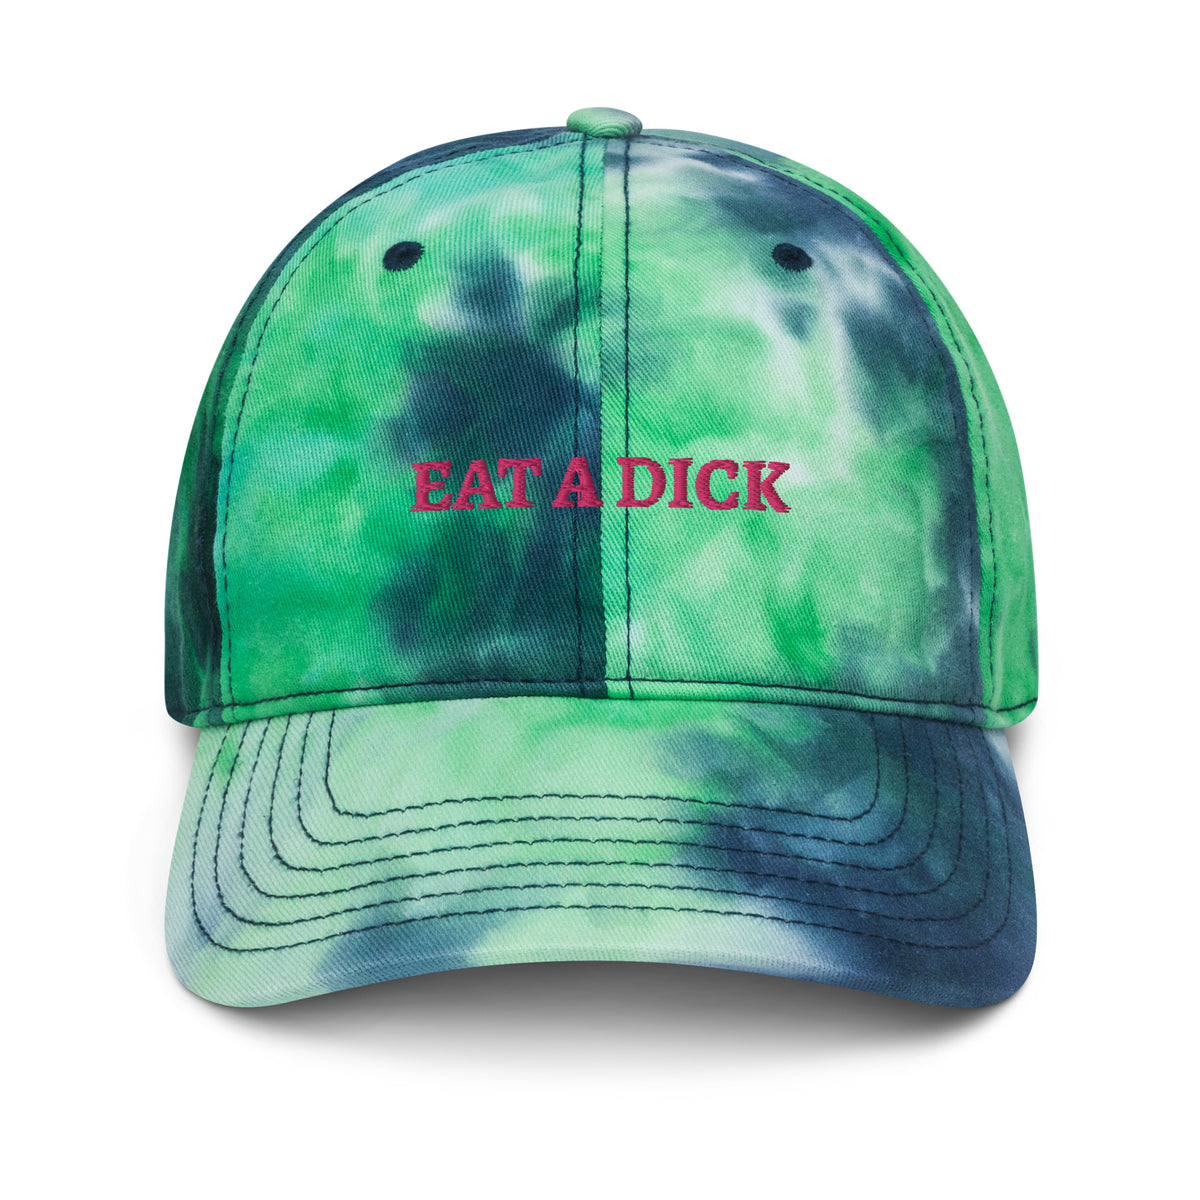 Eat a Dick Tie dye hat